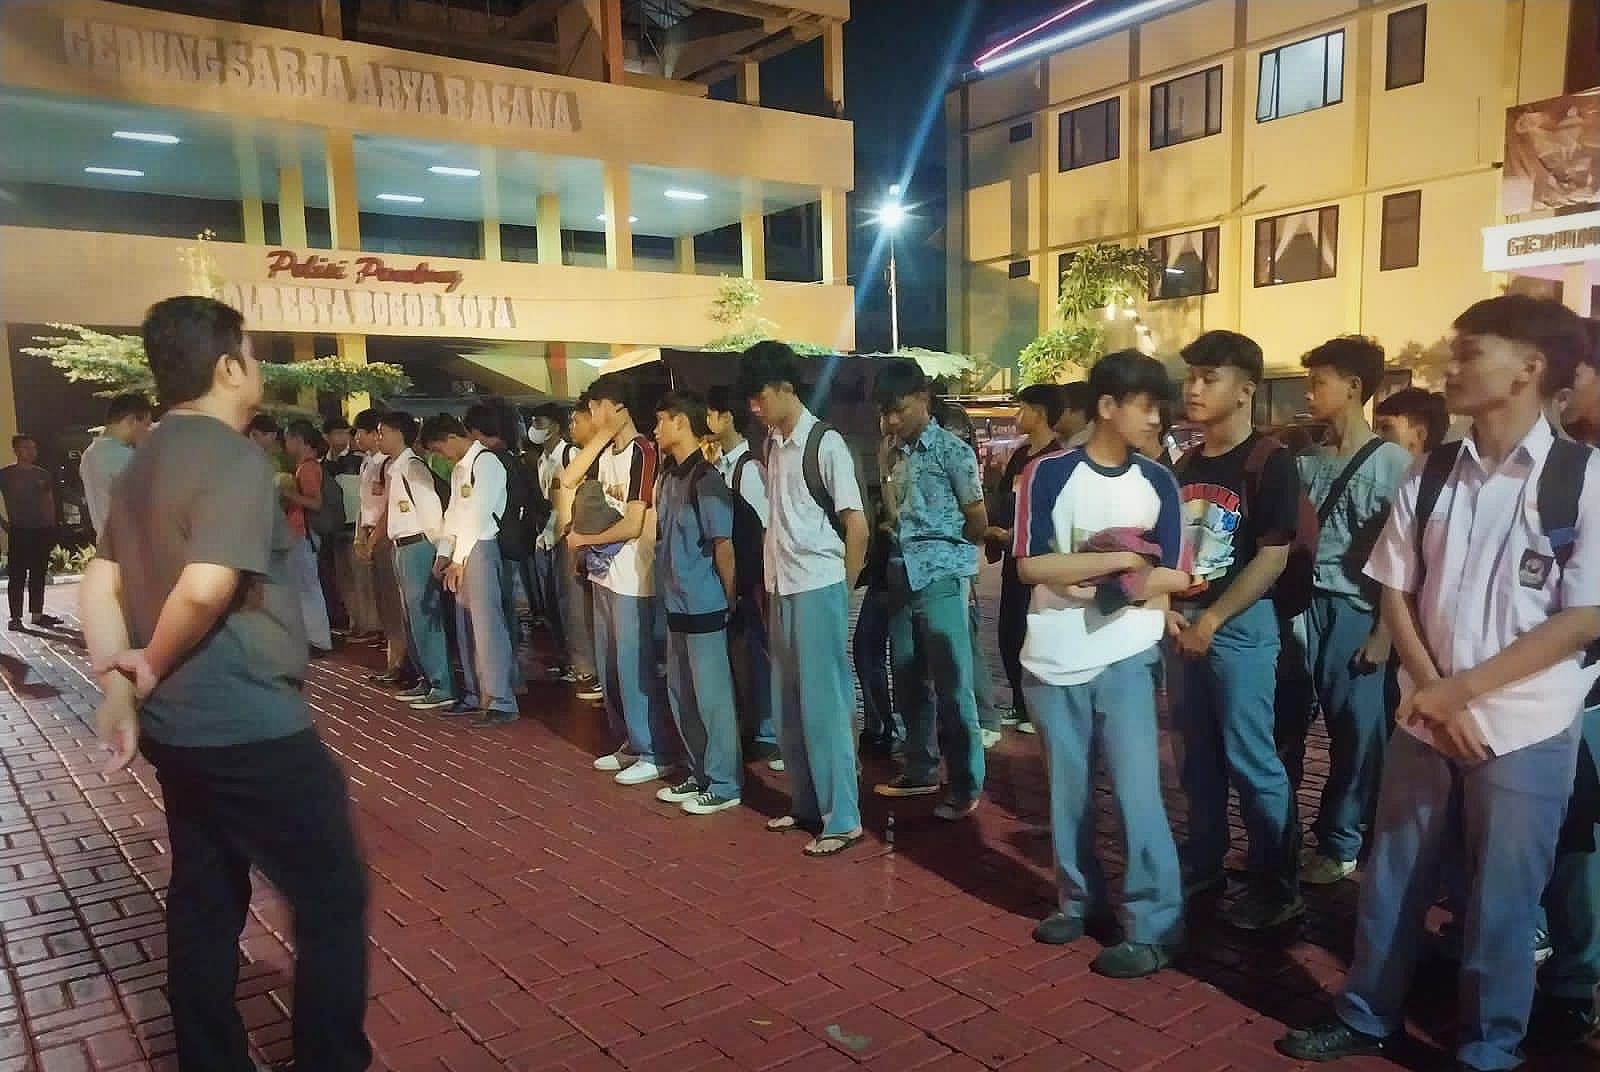 Berpotensi Tawuran, 92 Pelajar di Kota Bogor Diamankan Polisi Saat Rayakan Ultah Basis